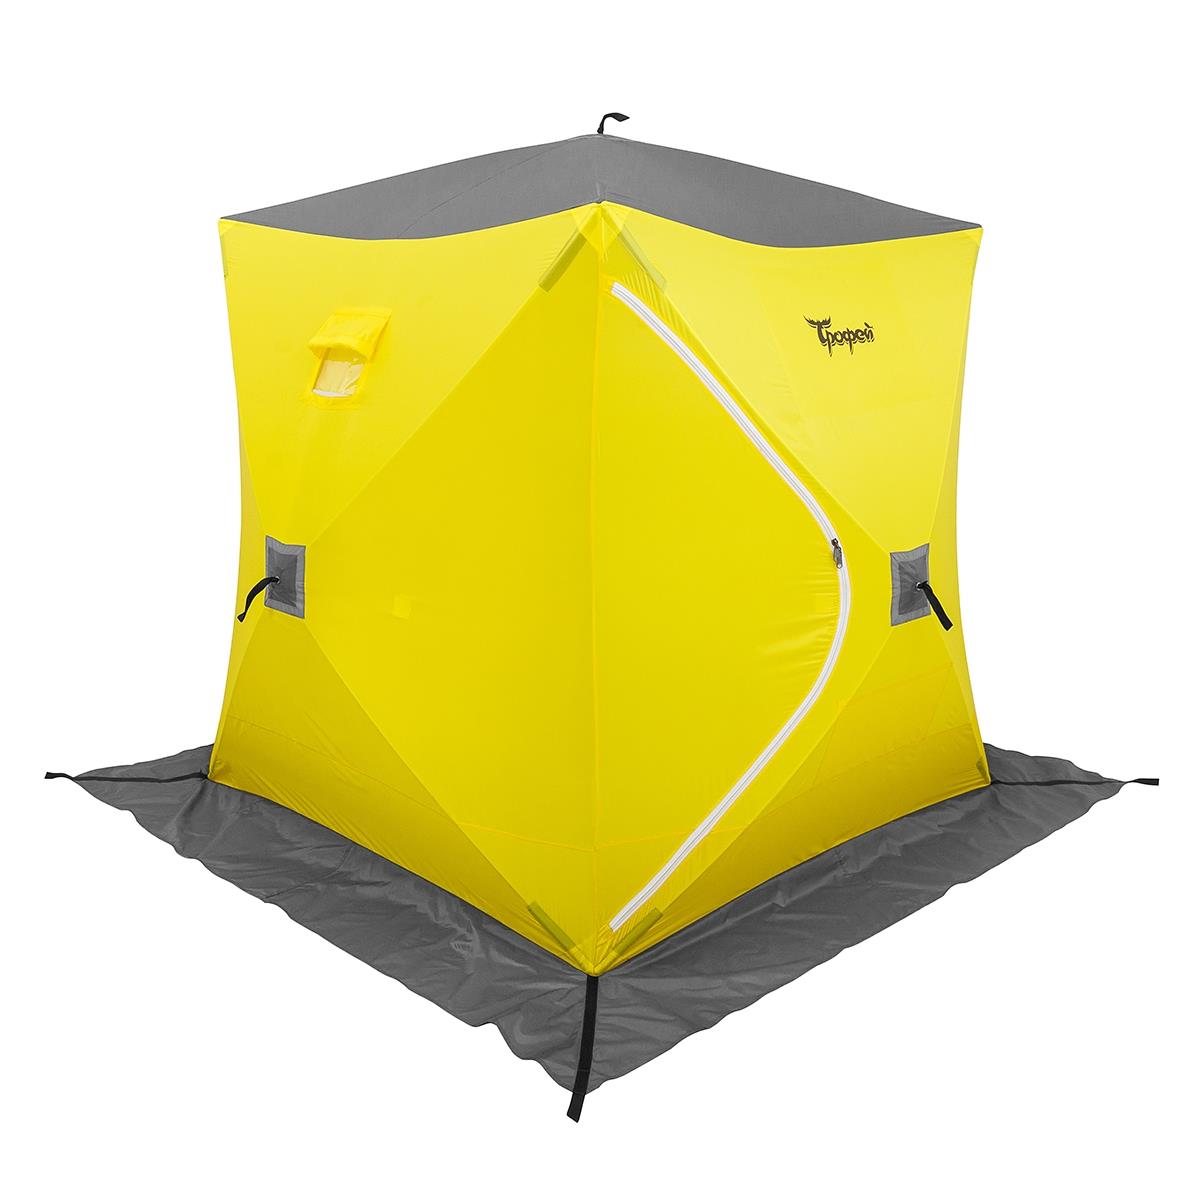 Палатка зимняя Куб 1,8х1,8 желтый/серый (TR-WSC-180YG) ТРОФЕЙ палатка зимняя piramida 2 0х2 0 yellow gray tr isp 200yg трофей